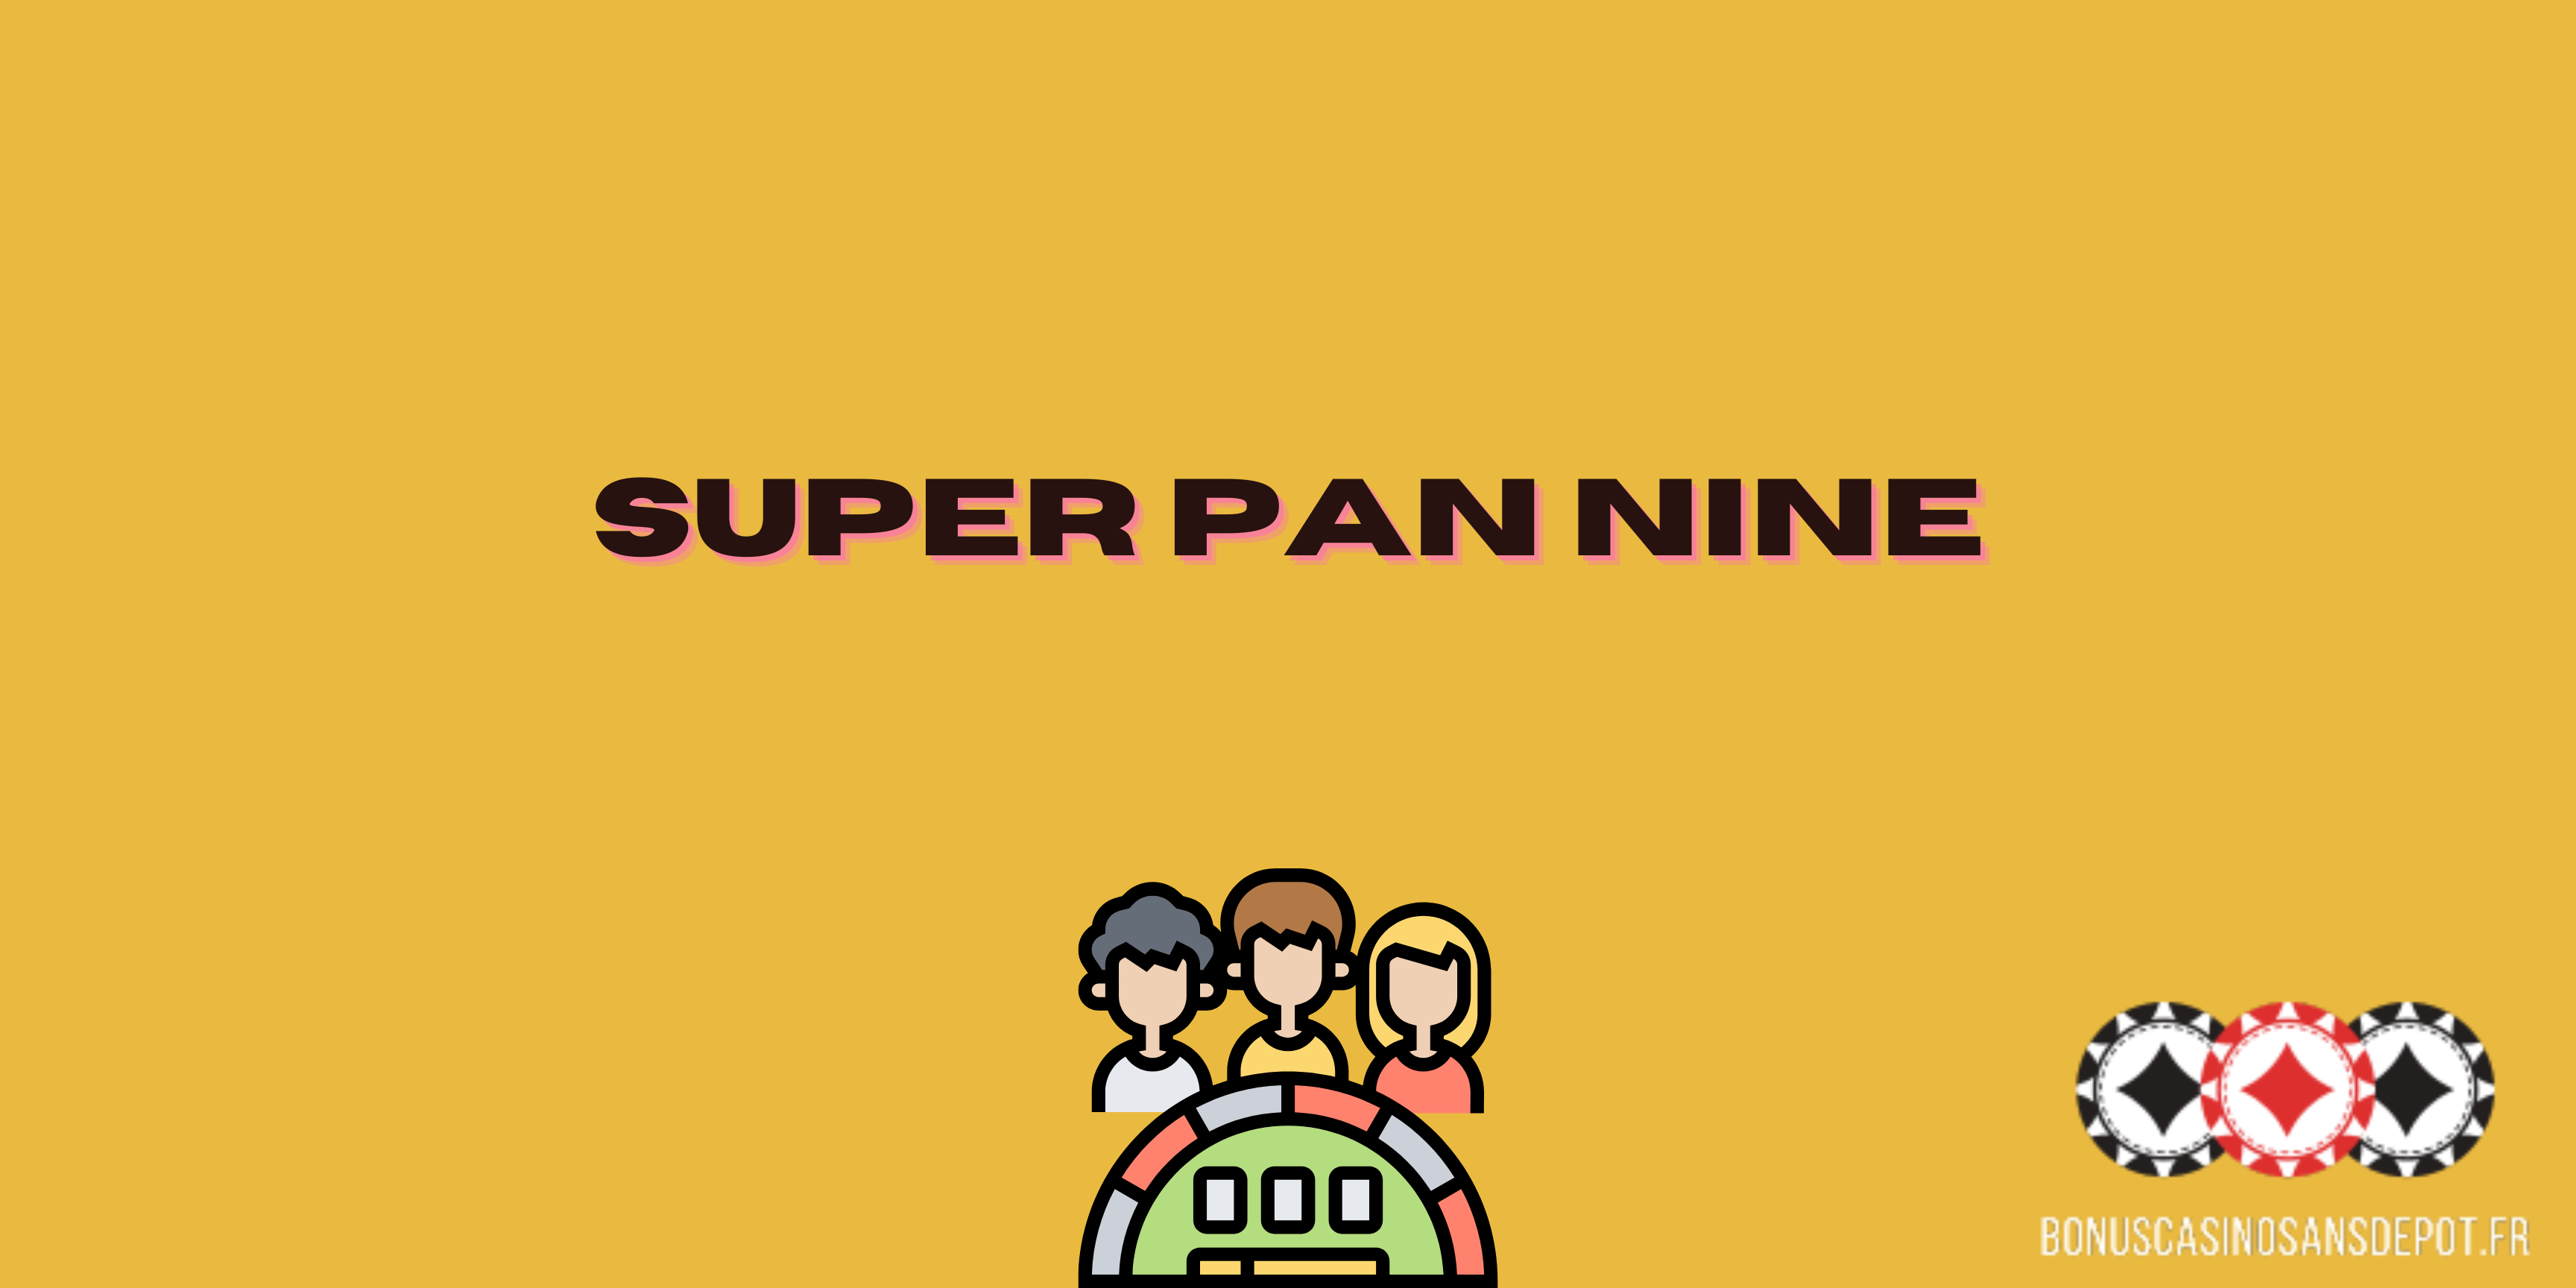 super pan nine